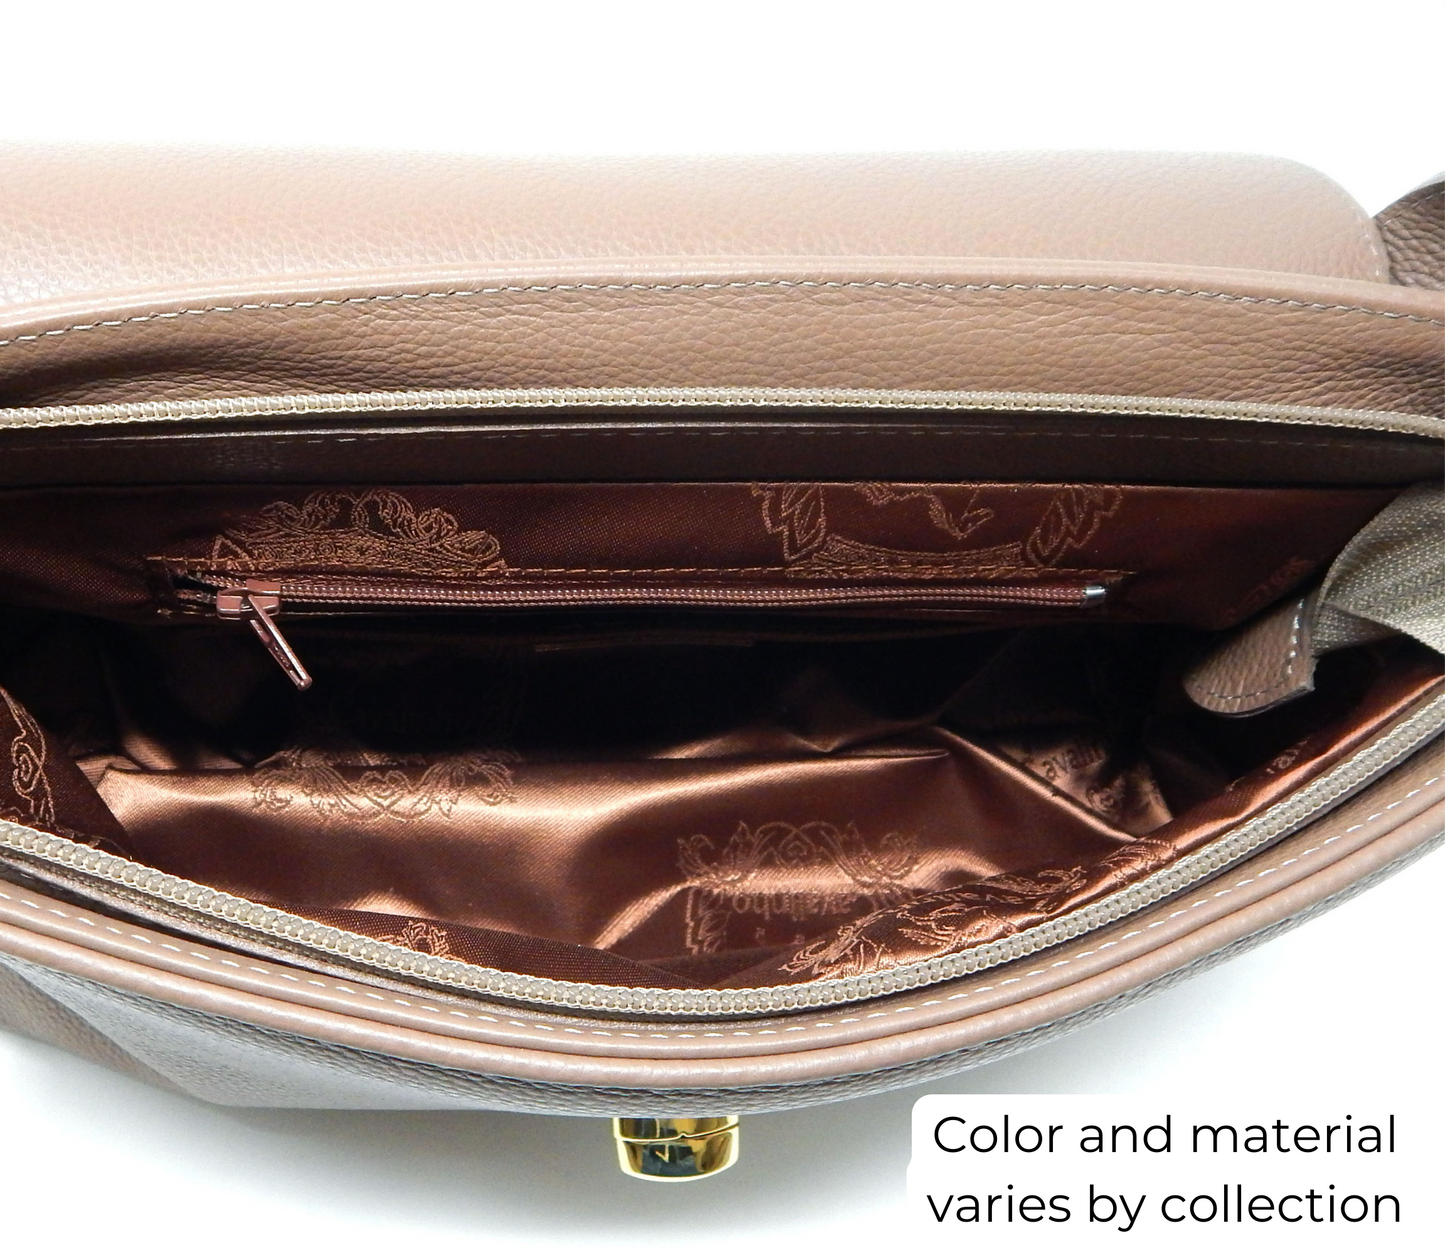 #color_ Black | Cavalinho Cherry Blossom Handbag - Black - inside_0514_a18b82f0-4135-447b-97c1-6223f3526192